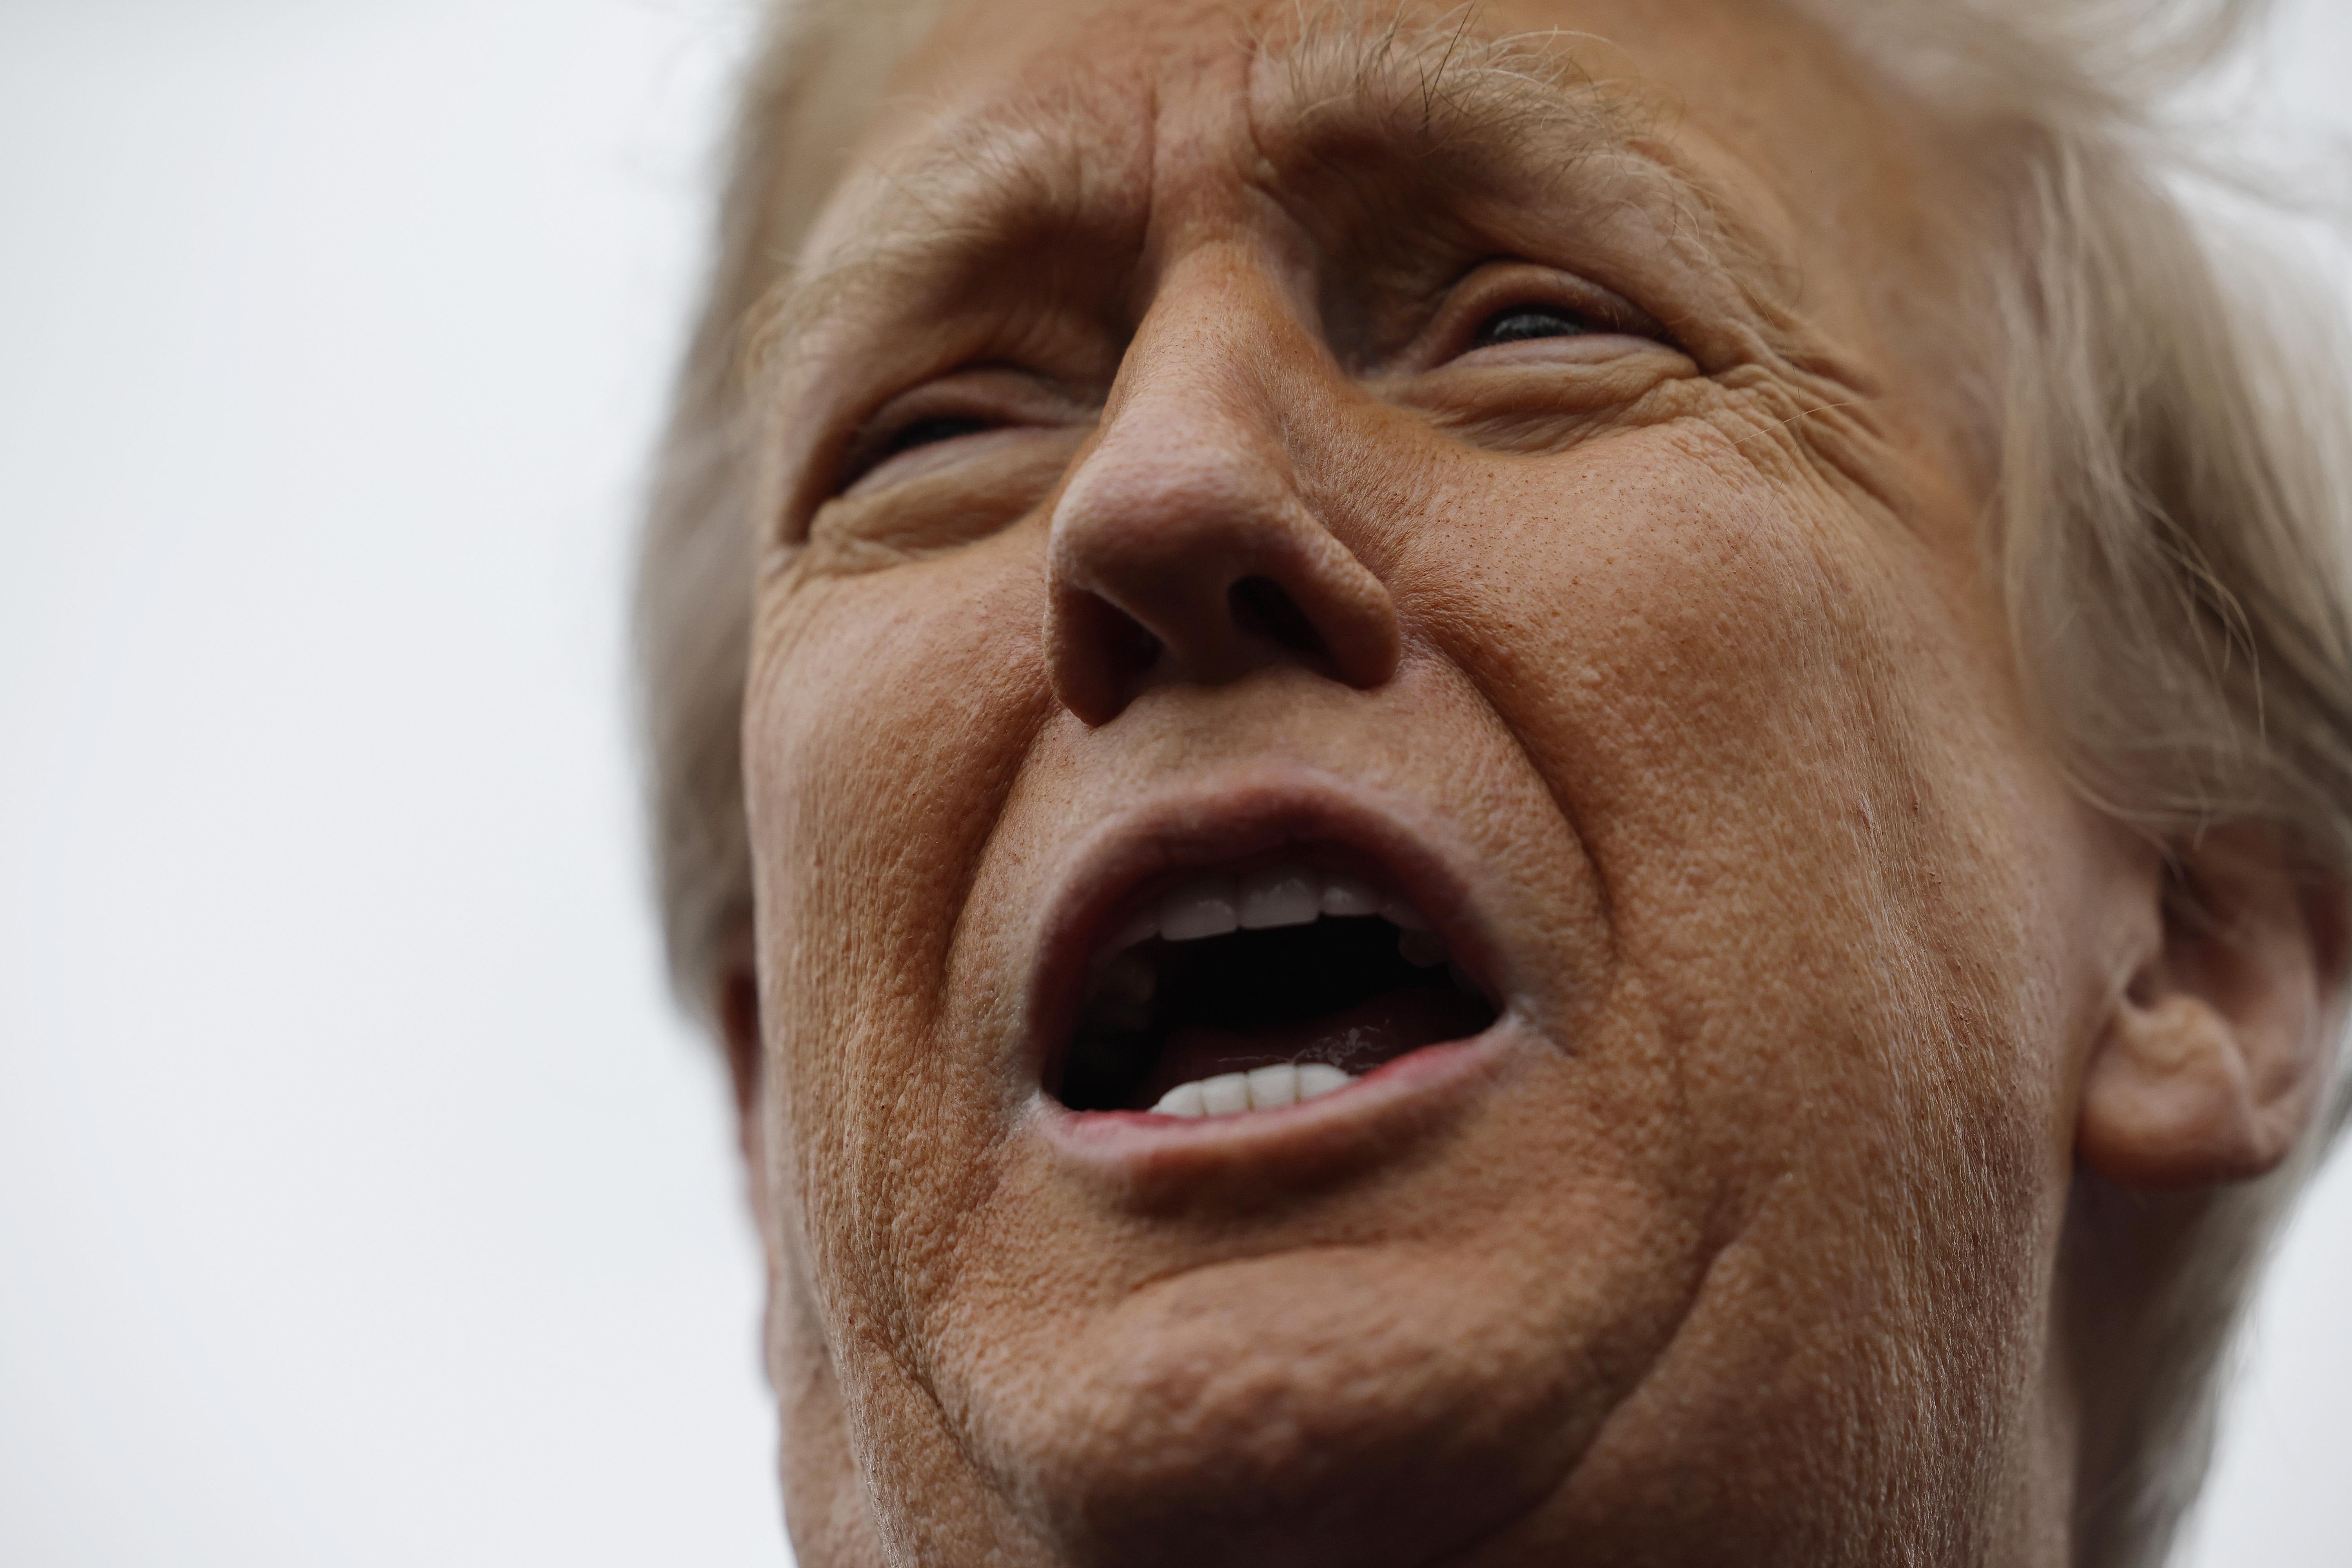 A close-up of Donald Trump's face.